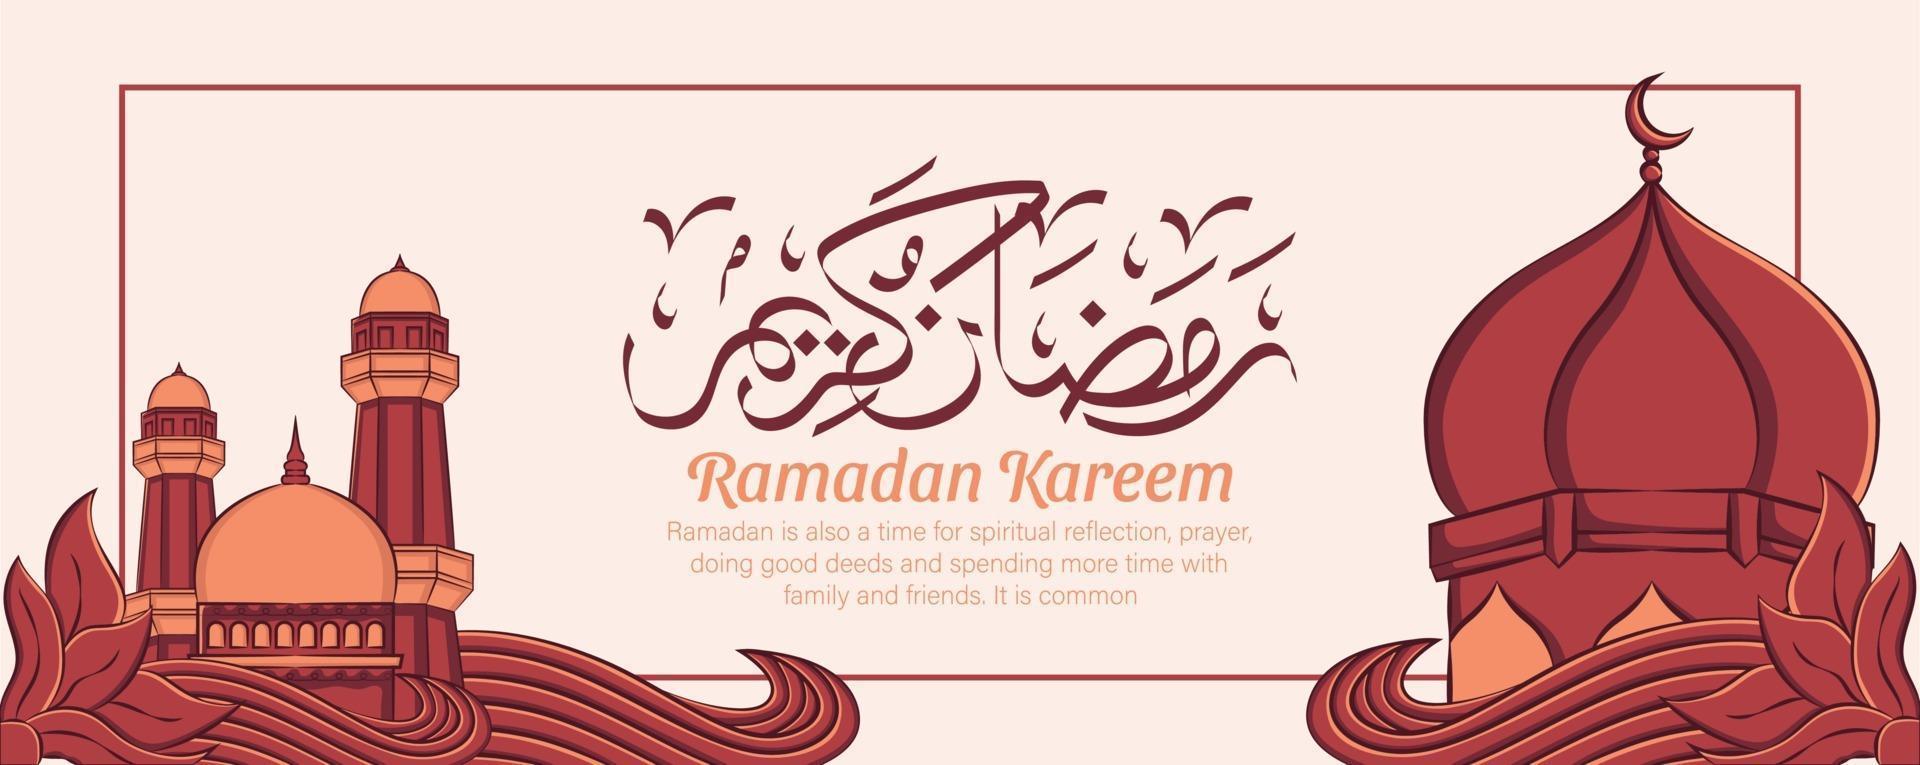 Ramadan Kareem banner com mão desenhada ornamento de ilustração islâmica em fundo branco. vetor